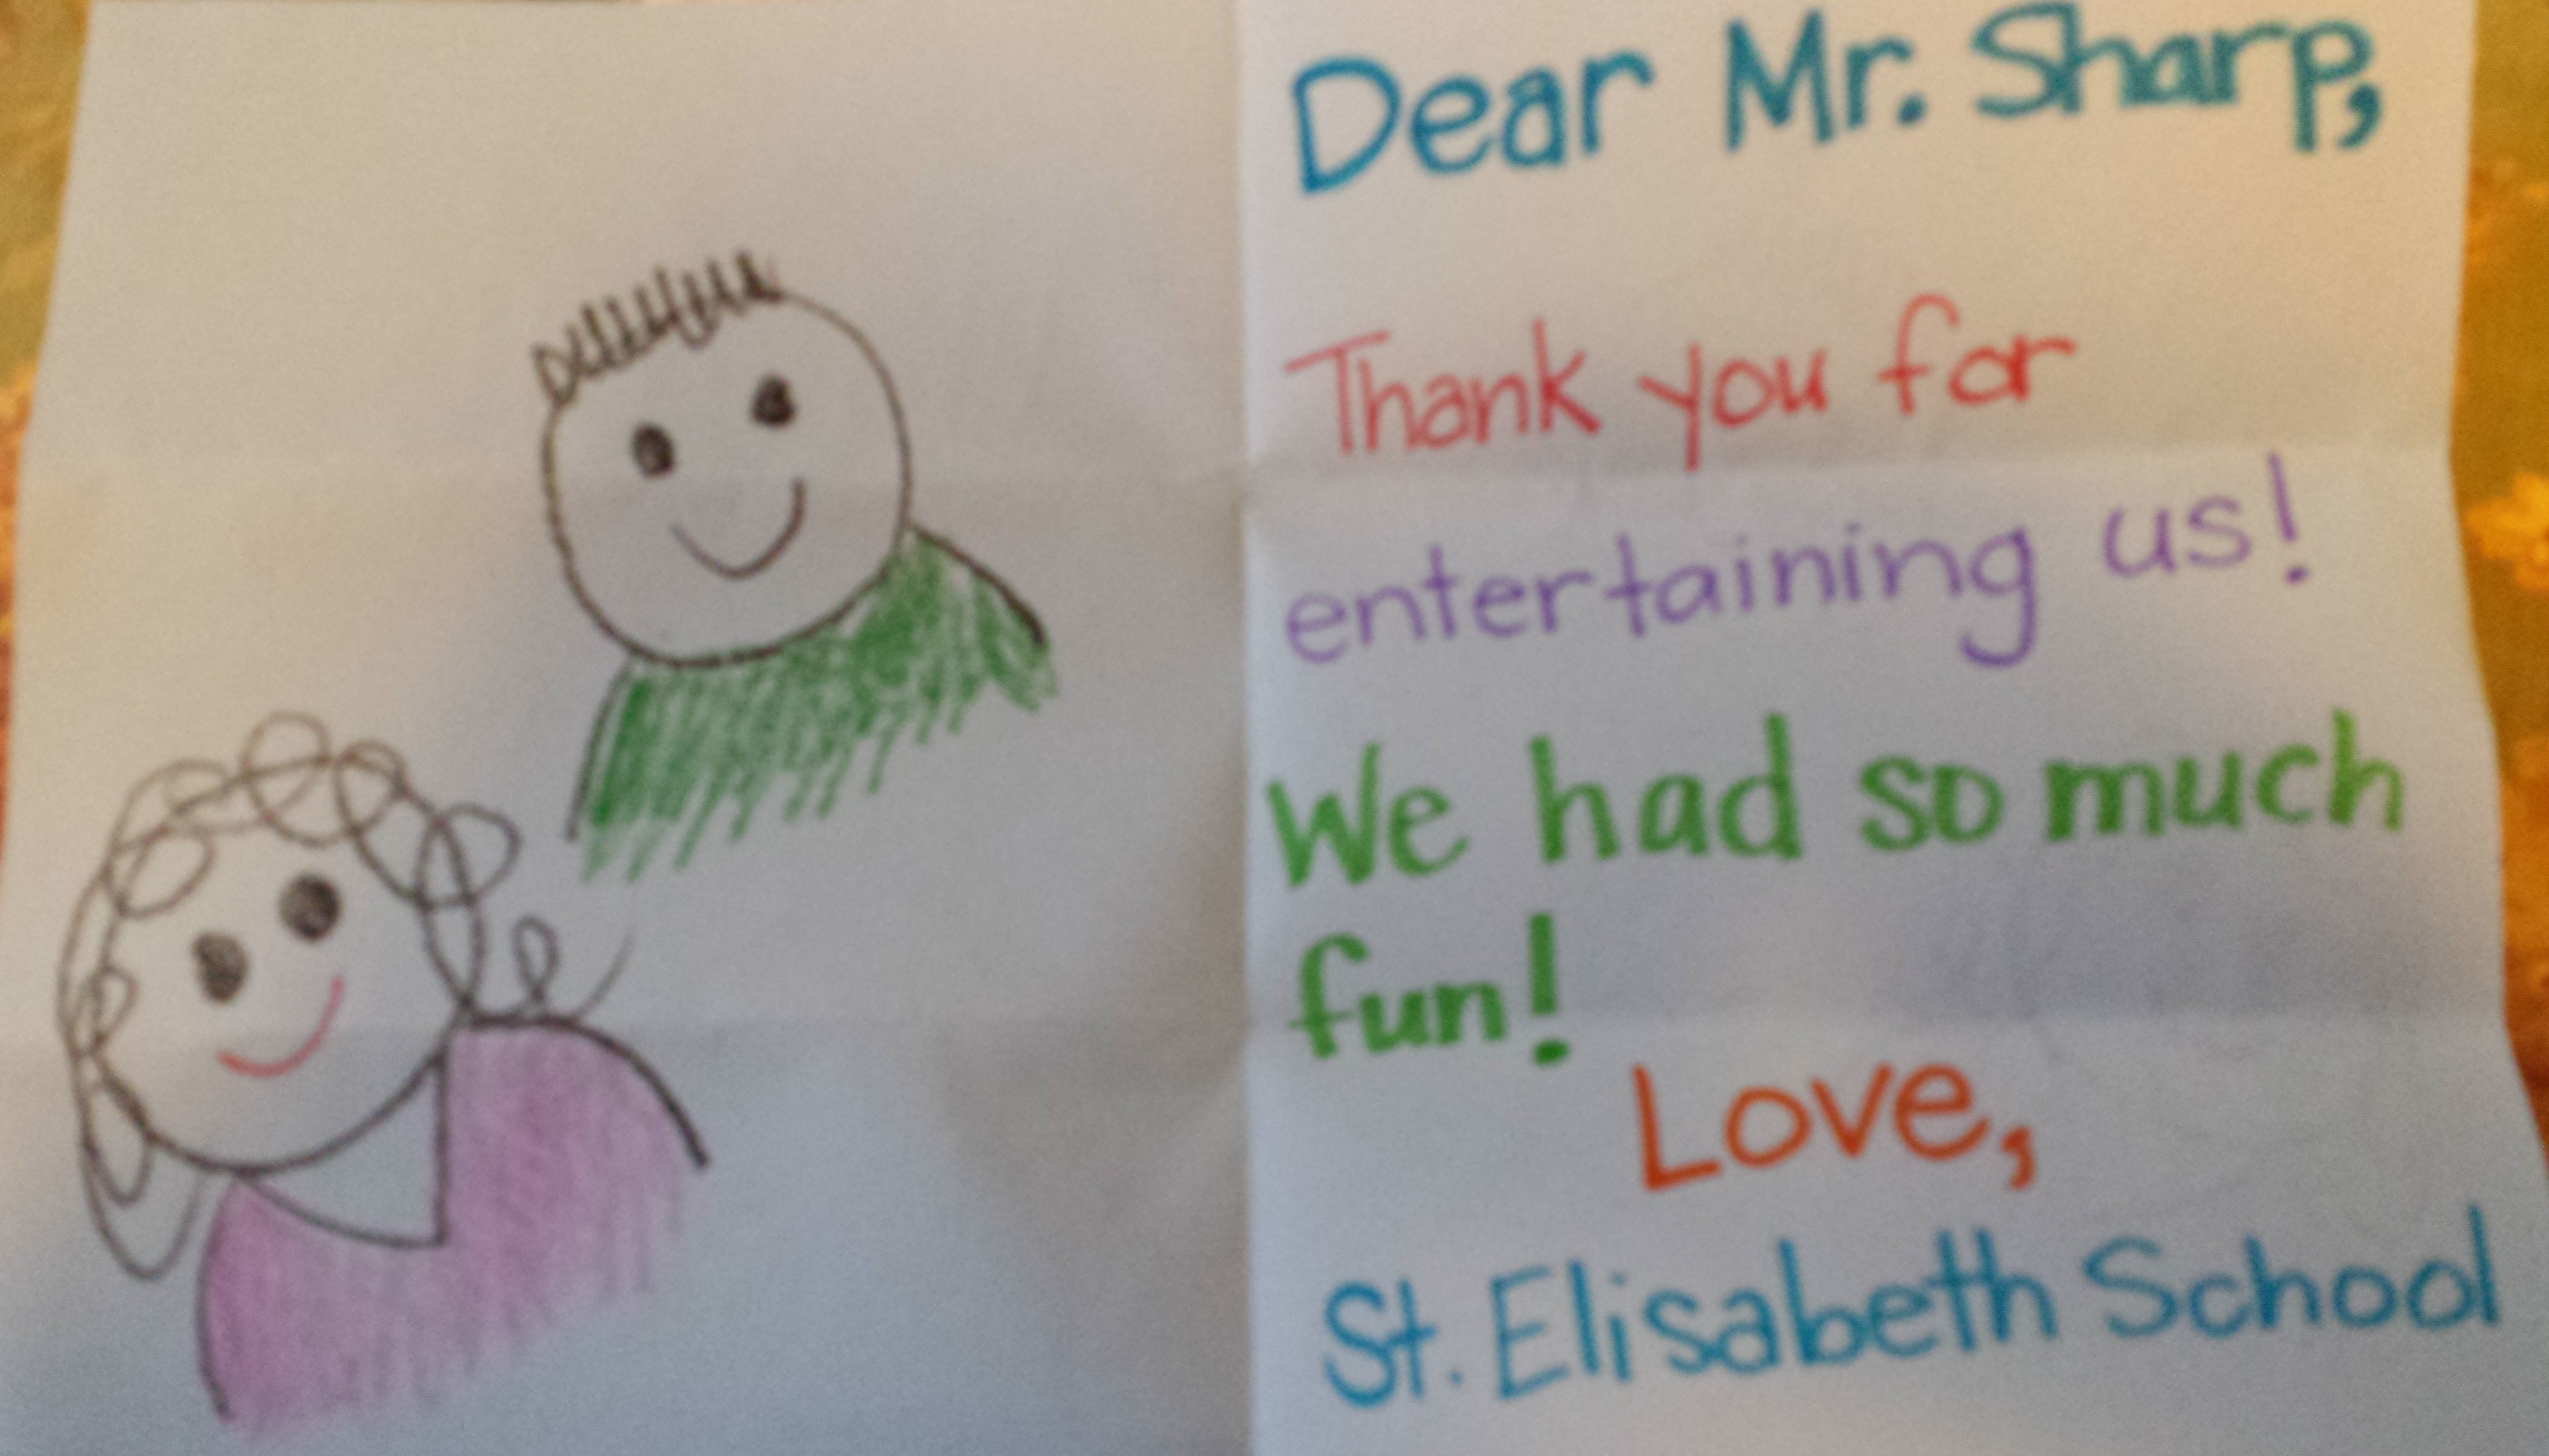 “Dear Mr. Sharp, thank you for entertaining us. We had so much fun! “ St Elisabeth School